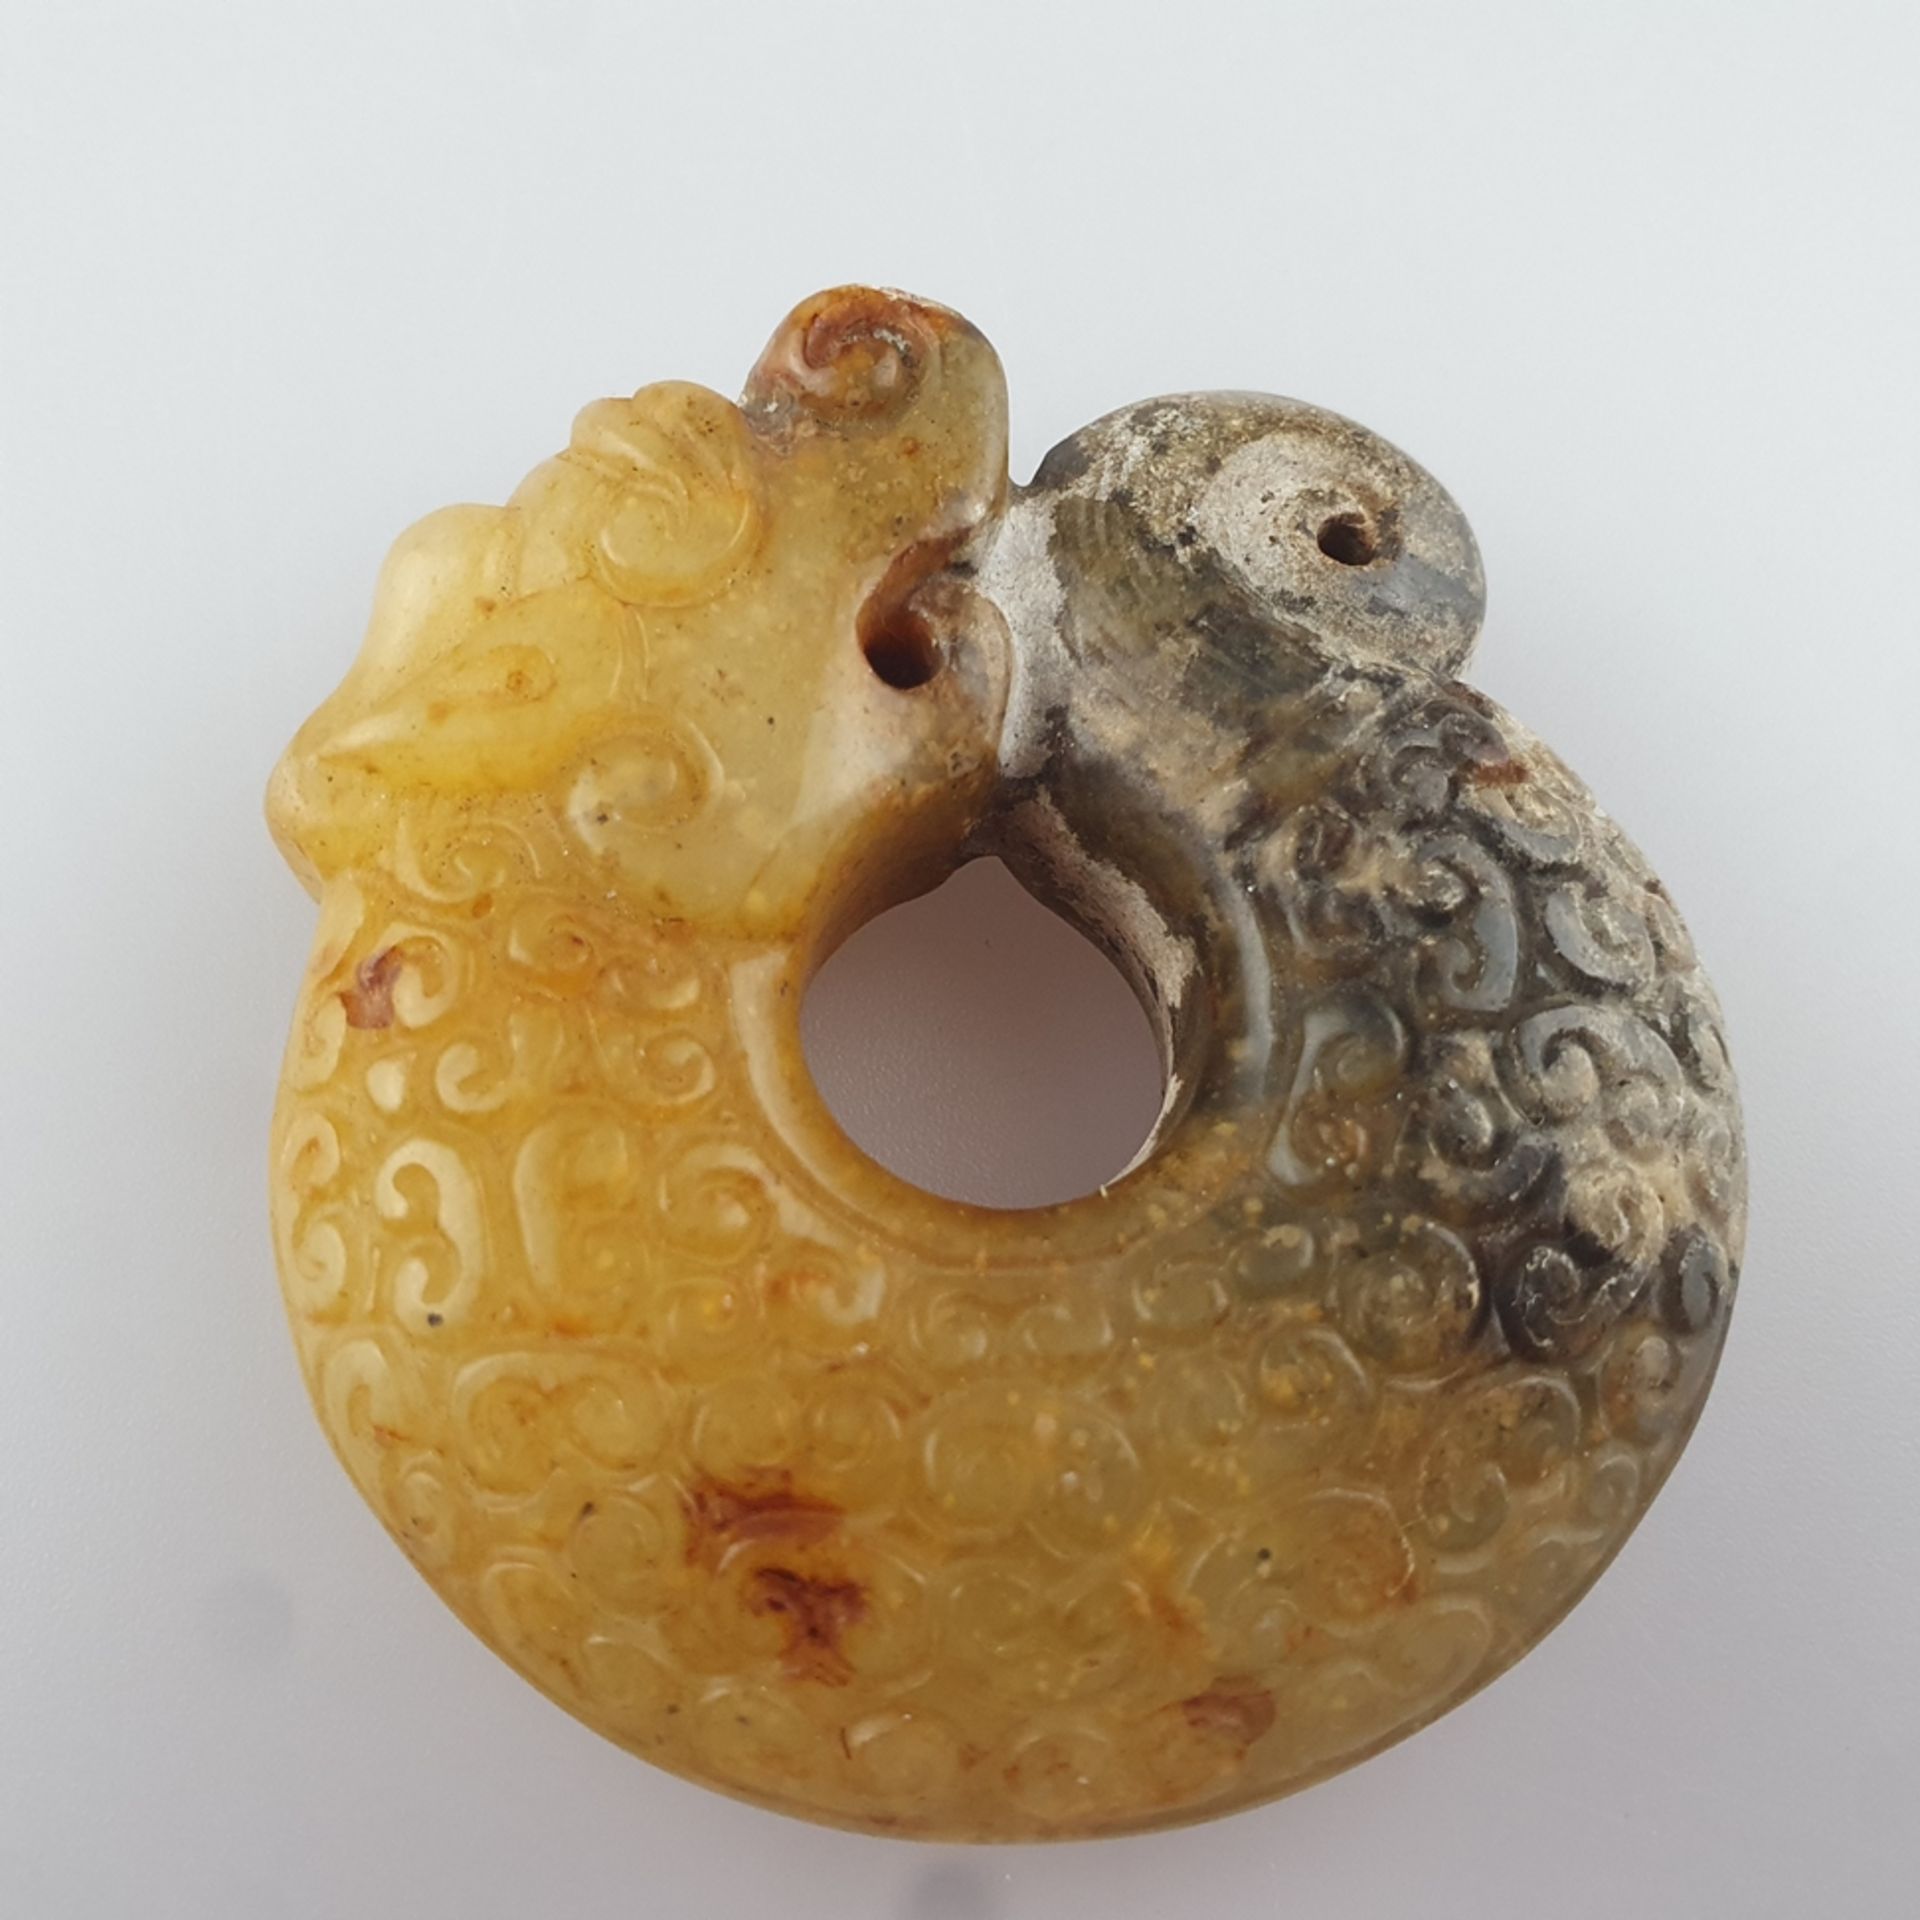 Zhulong ("Schweinsdrache") - China, braun-gelbe Jade, teils kalzifiziert, im Stil der neolithischen